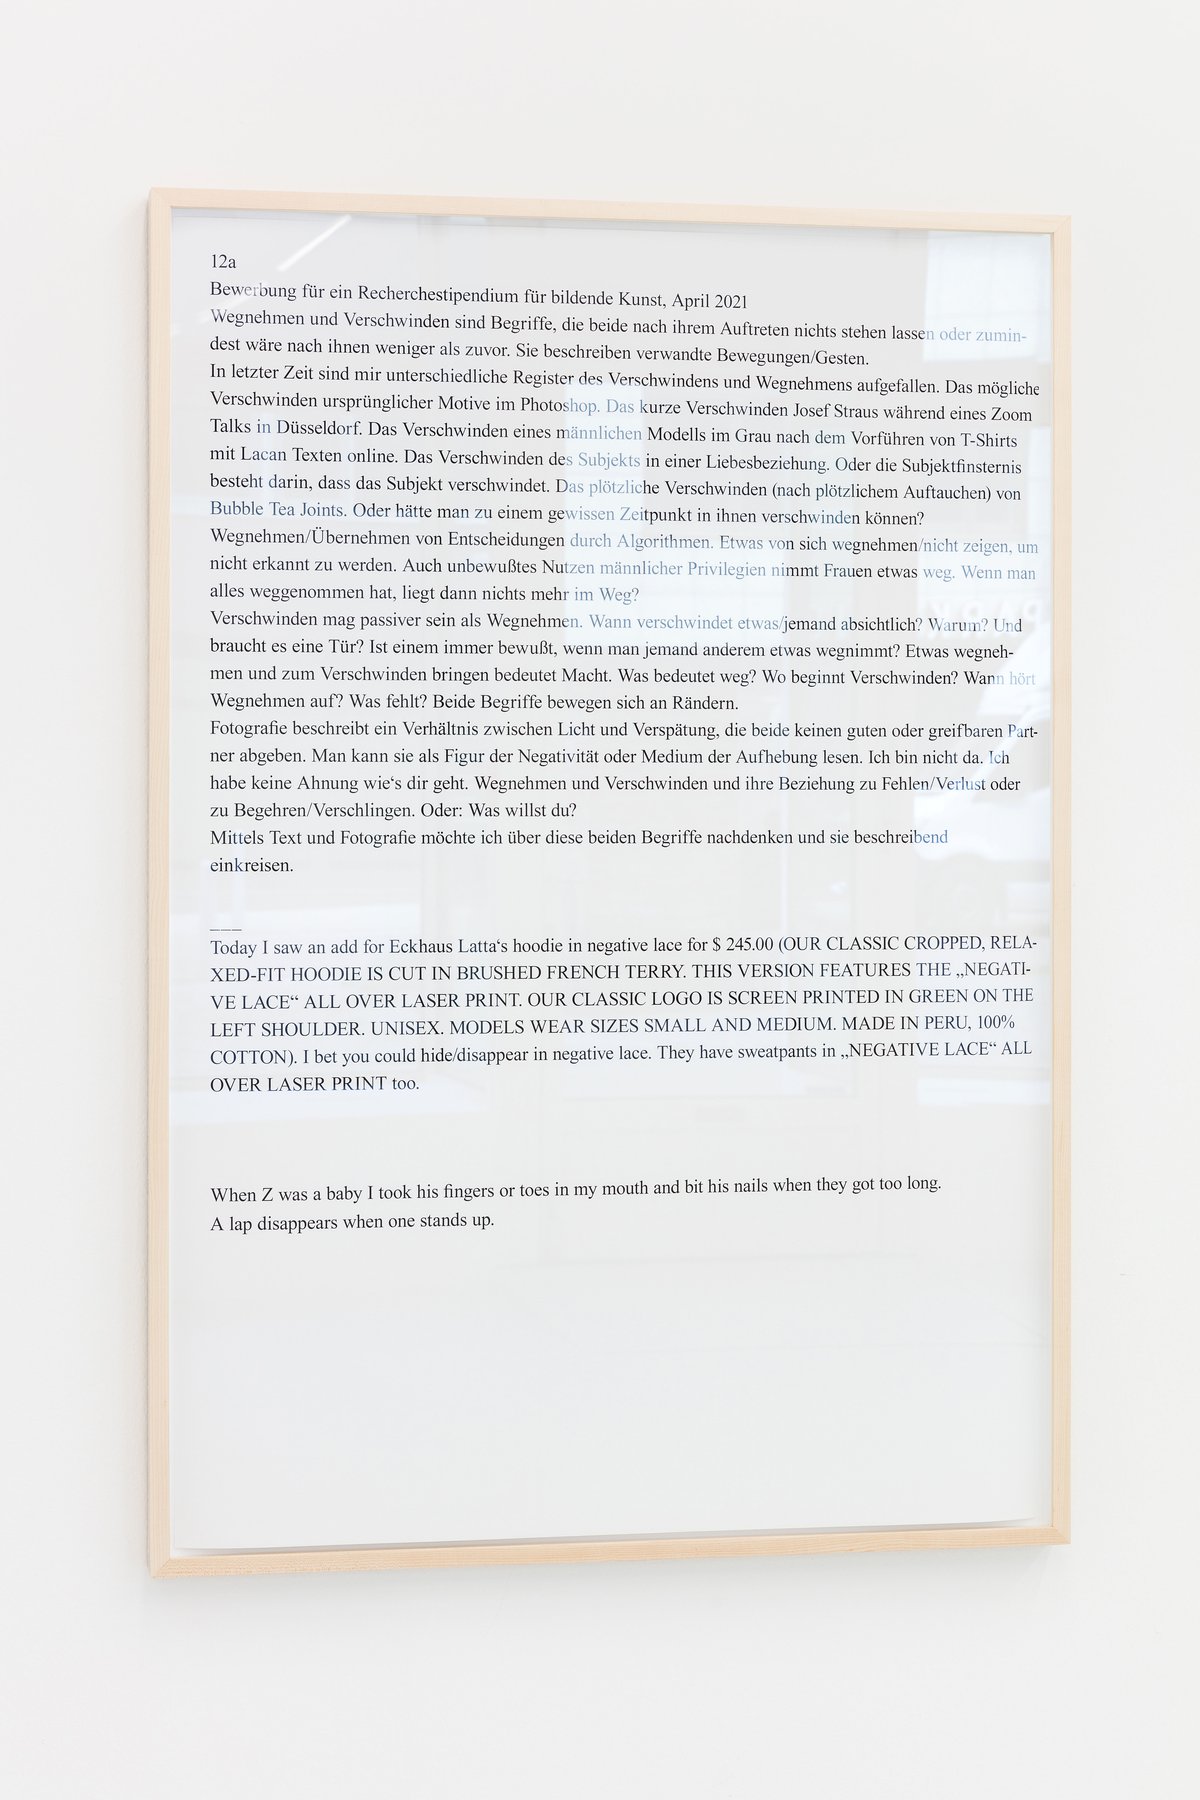 Lisa HolzerBewerbung für ein Recherchestipendium für bildende Kunst, April 2021, 2021Pigment print on cotton paper, black marker on wood110.3 x 76 cm